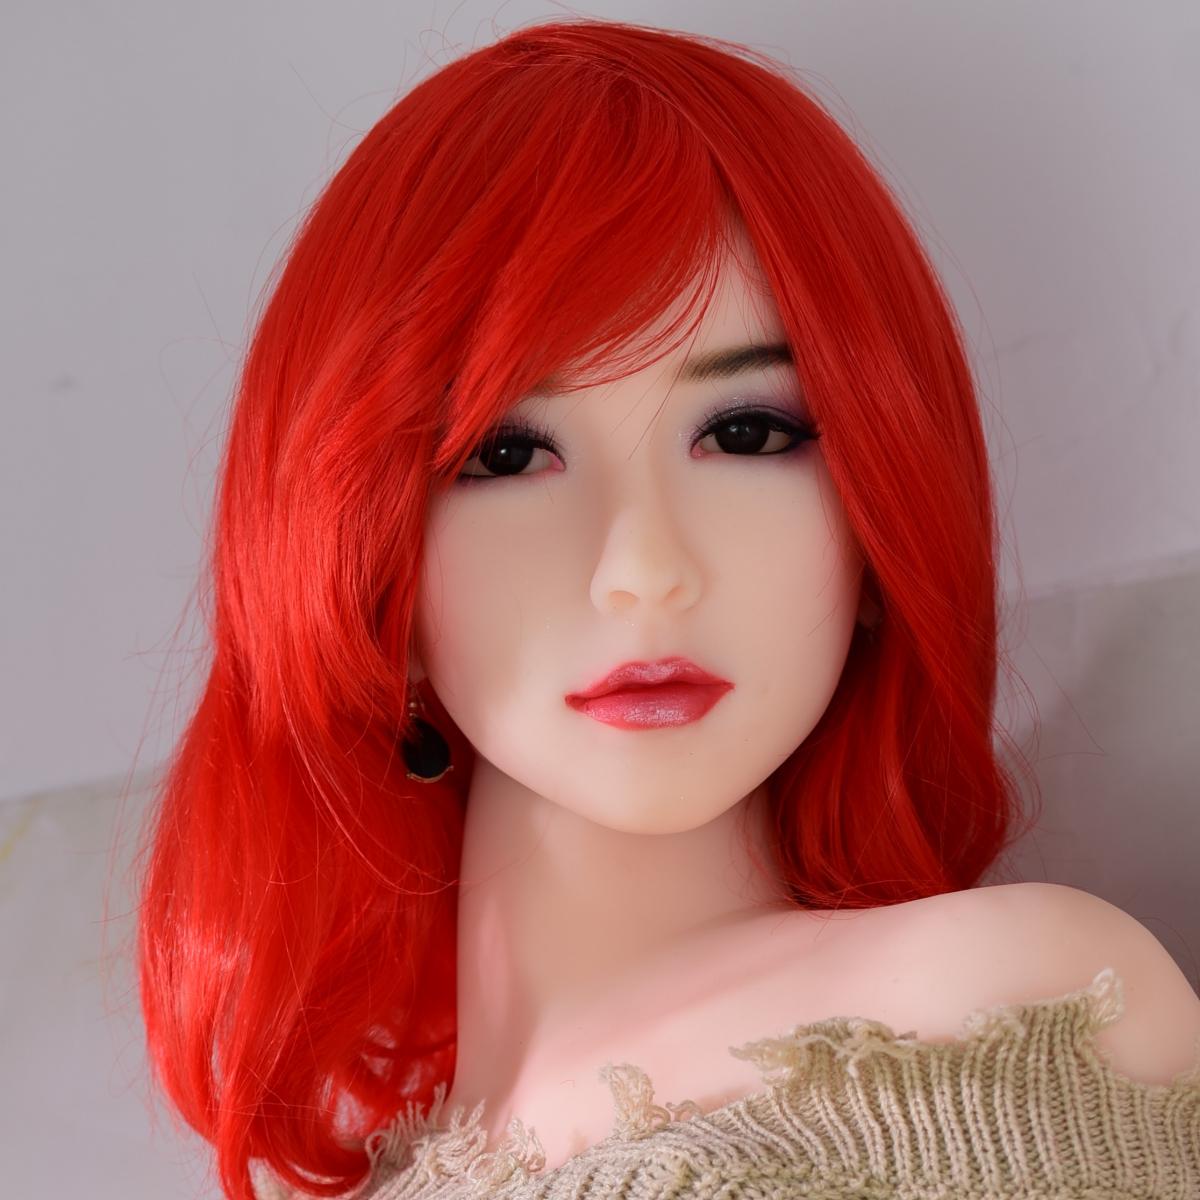 Neodoll Allure - 36 - Sex Doll Head - M16 Compatible - Tan